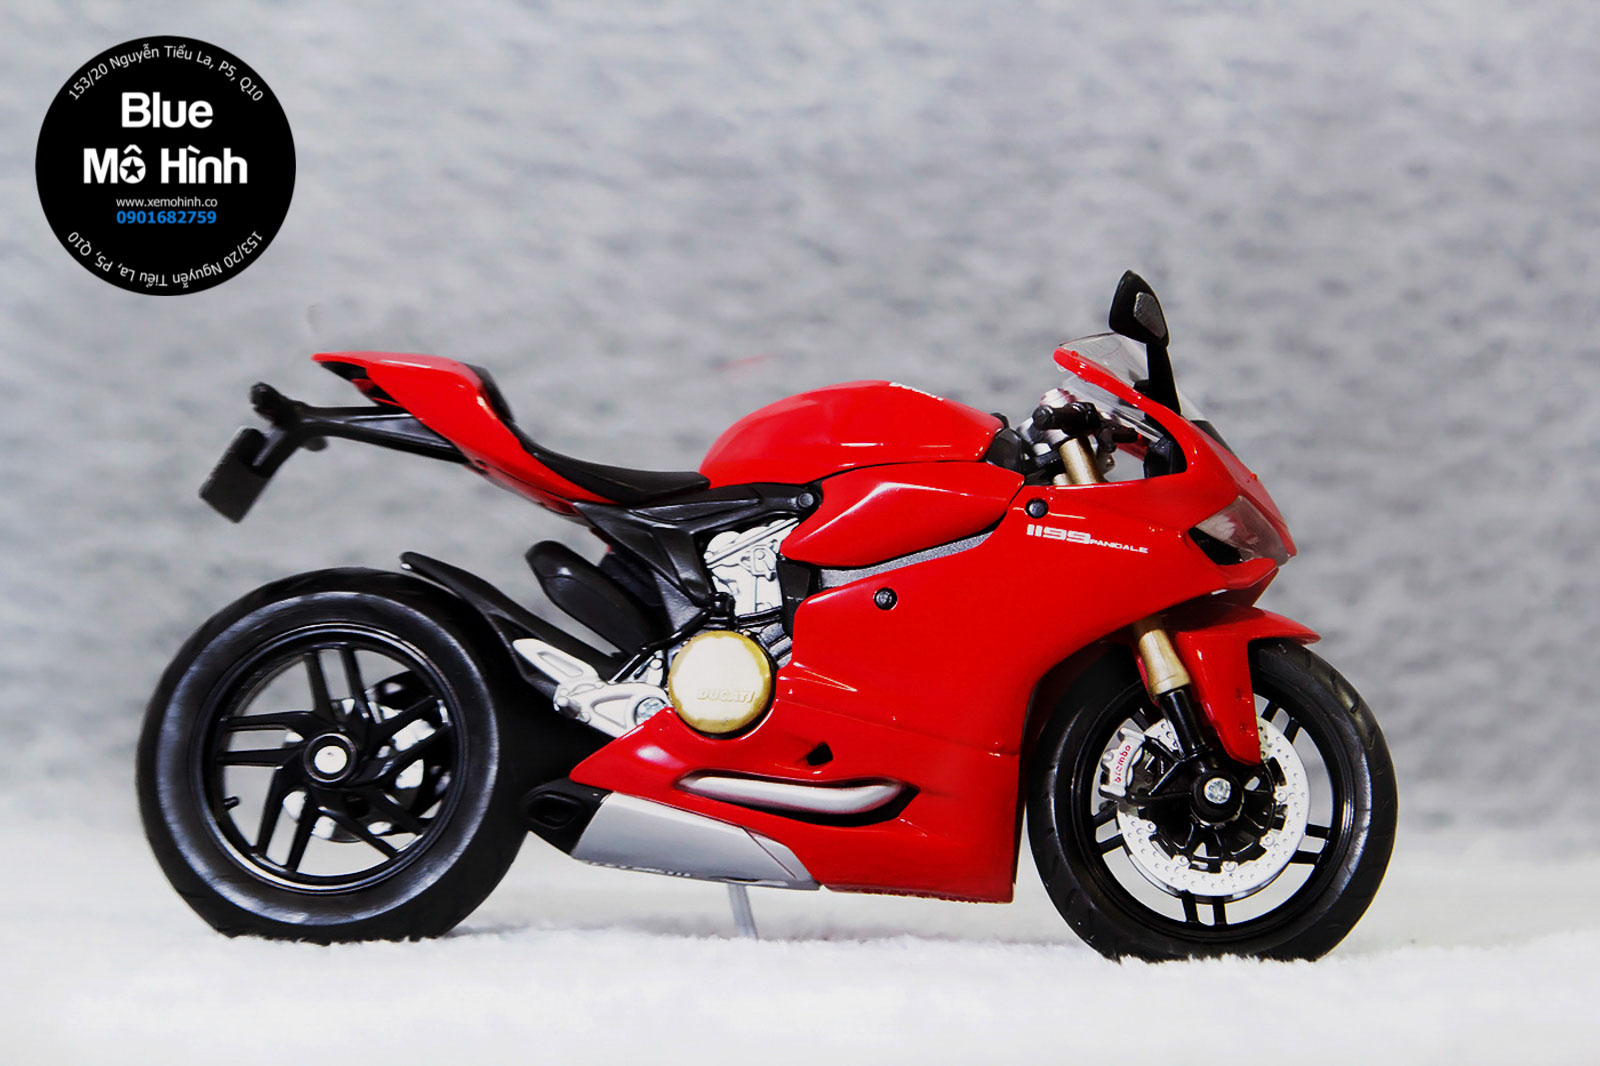 Ducati Panigale 899 giá hơn 500 triệu rất thời thượng có gì nóng